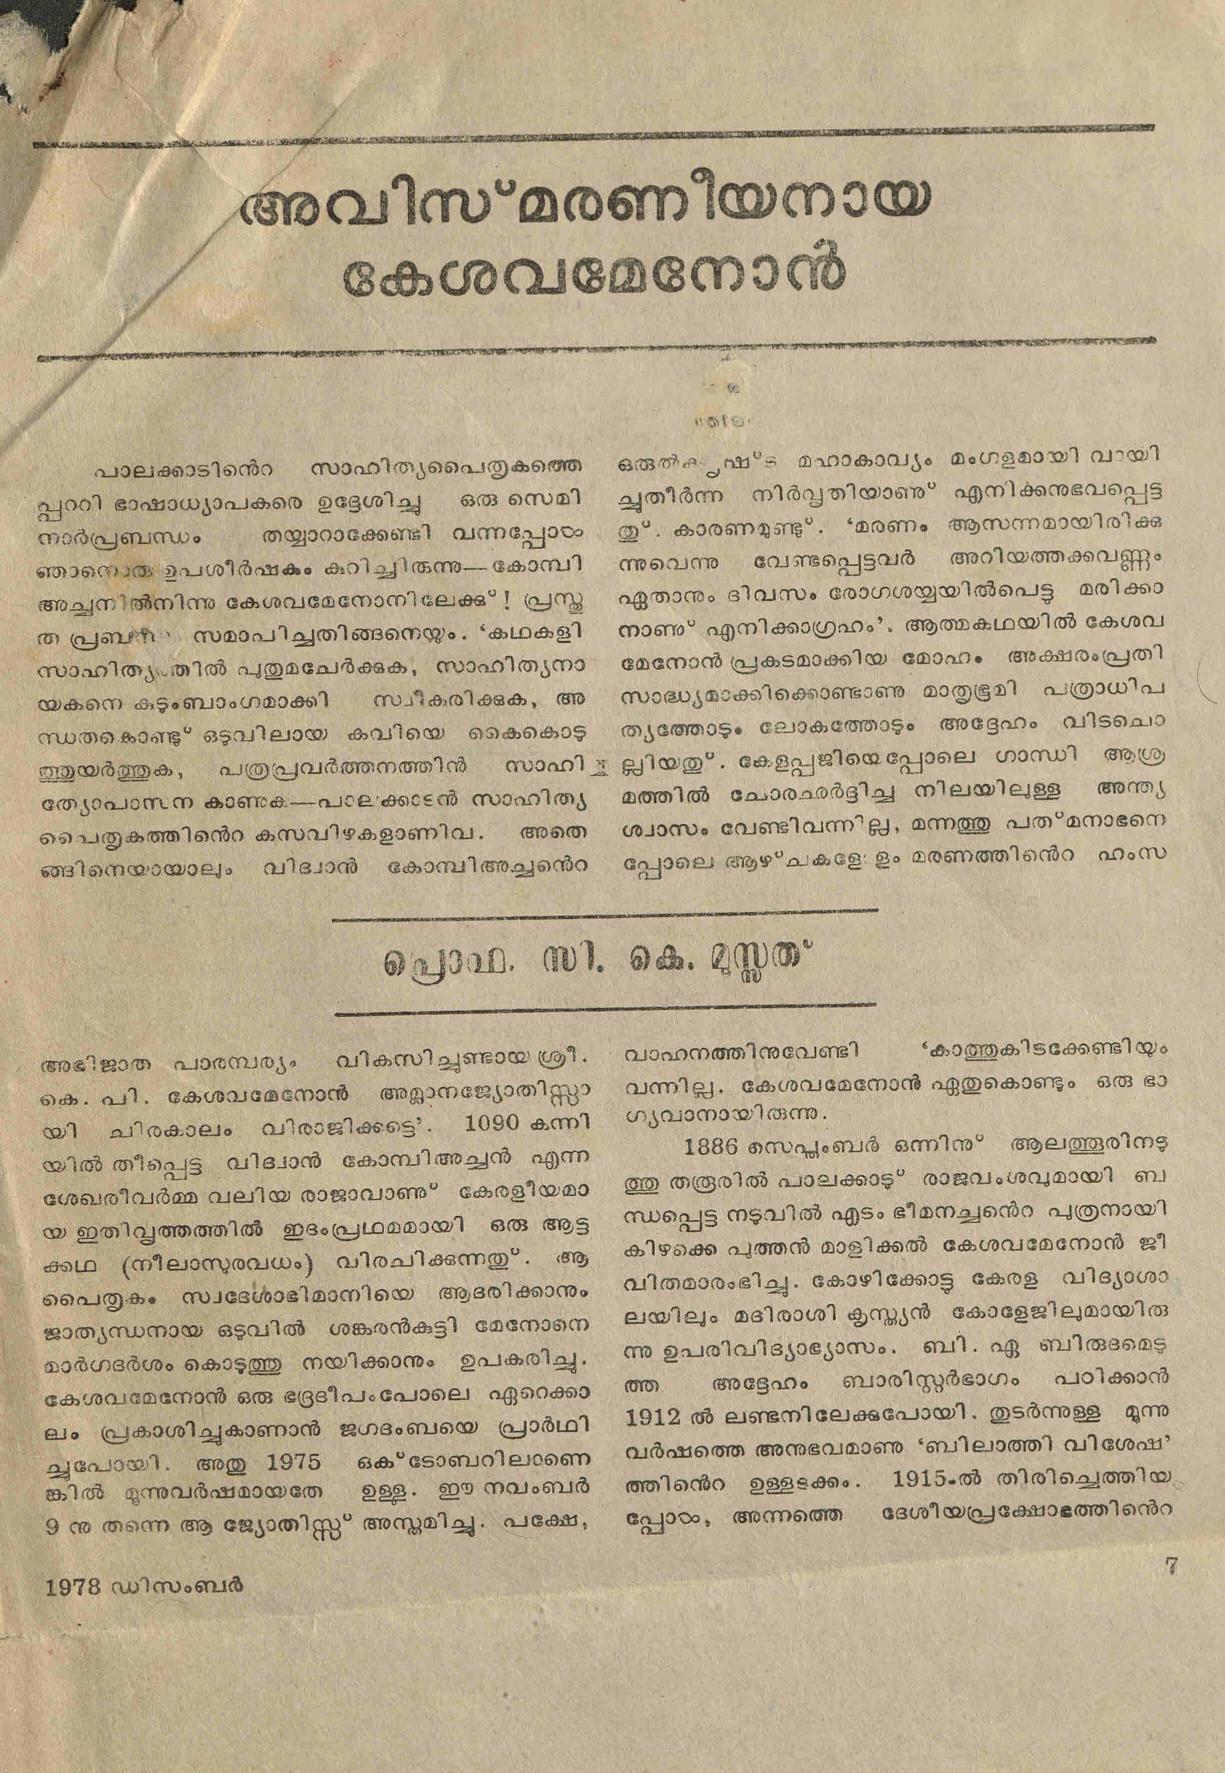 1978 - അവിസ്മരണീയനായ കേശവമേനോൻ - സി. കെ. മൂസ്സത്